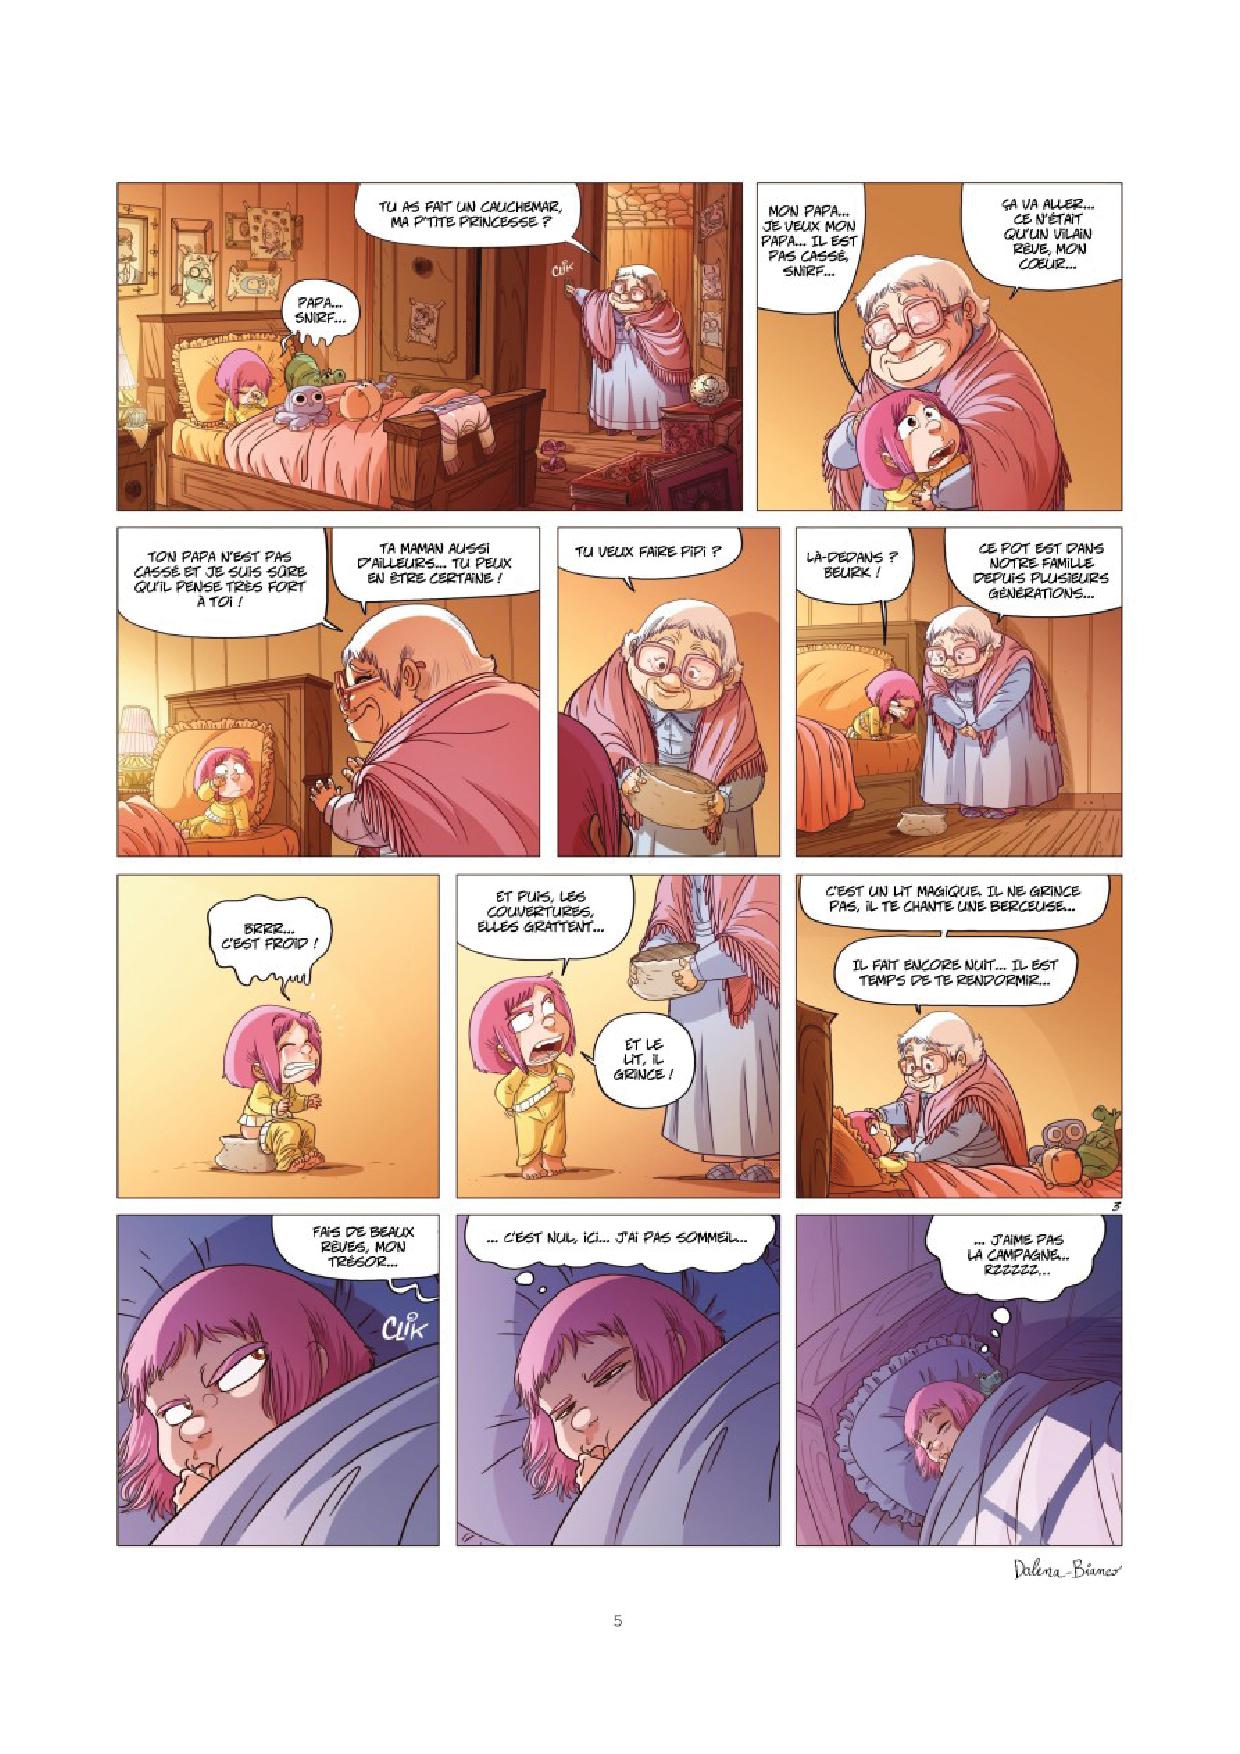 Ernest&Rebecca#3_page5